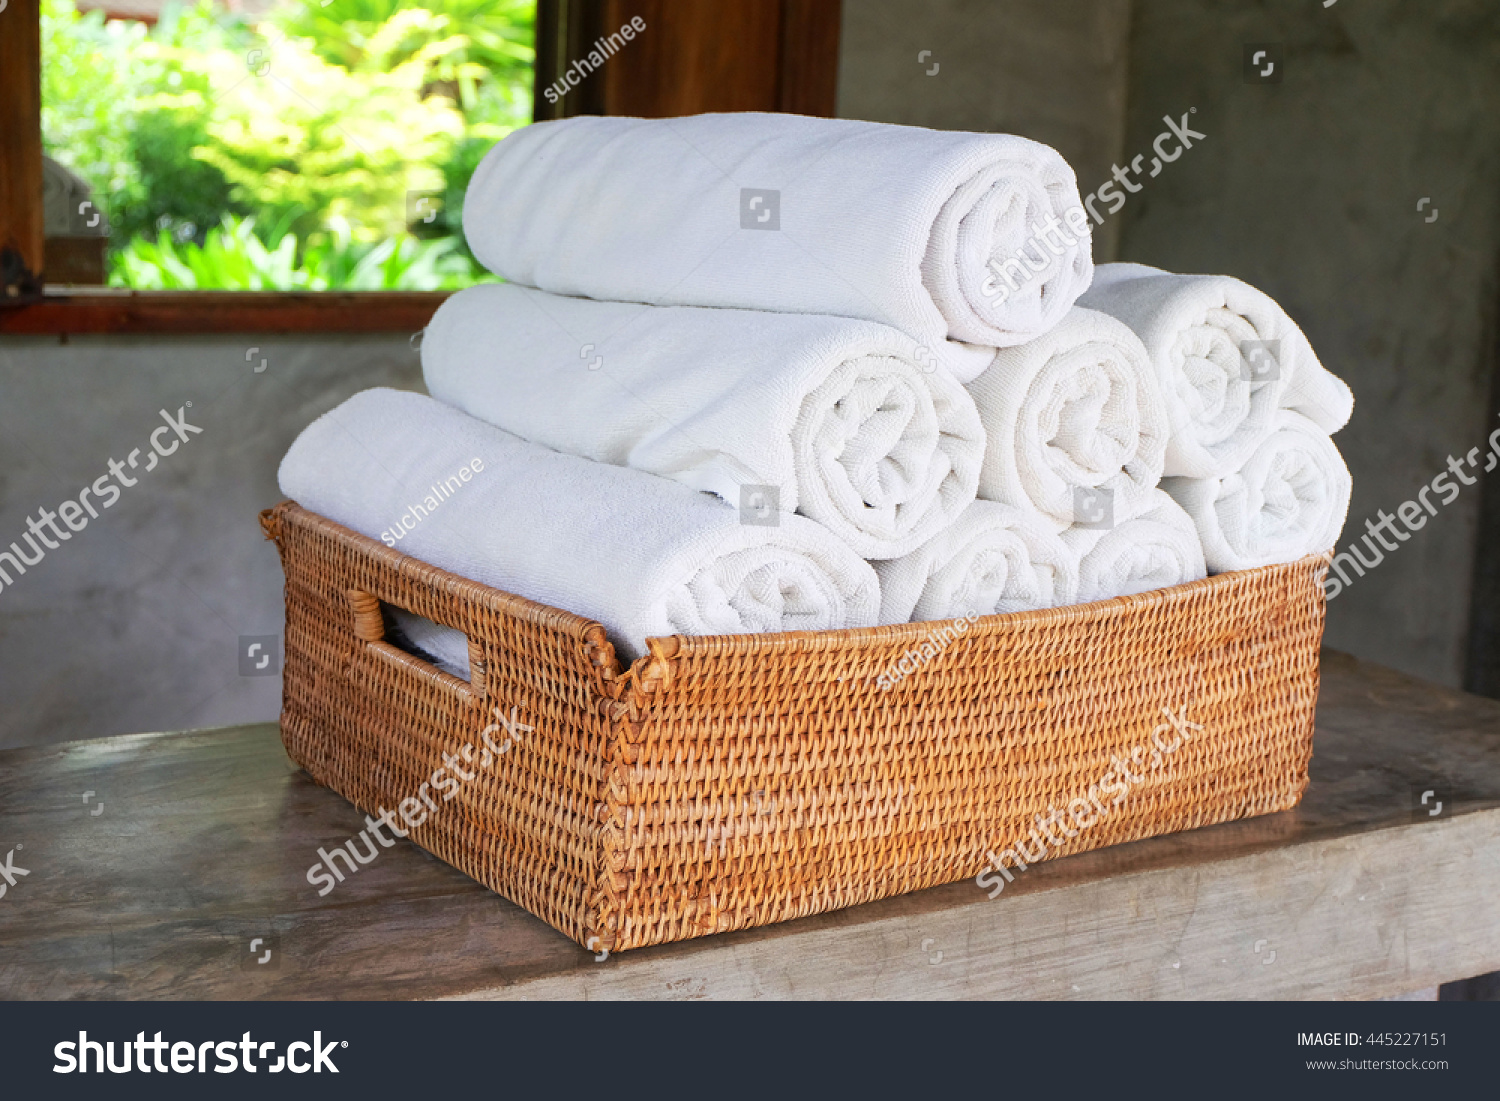 как красиво уложить полотенце в гостинице